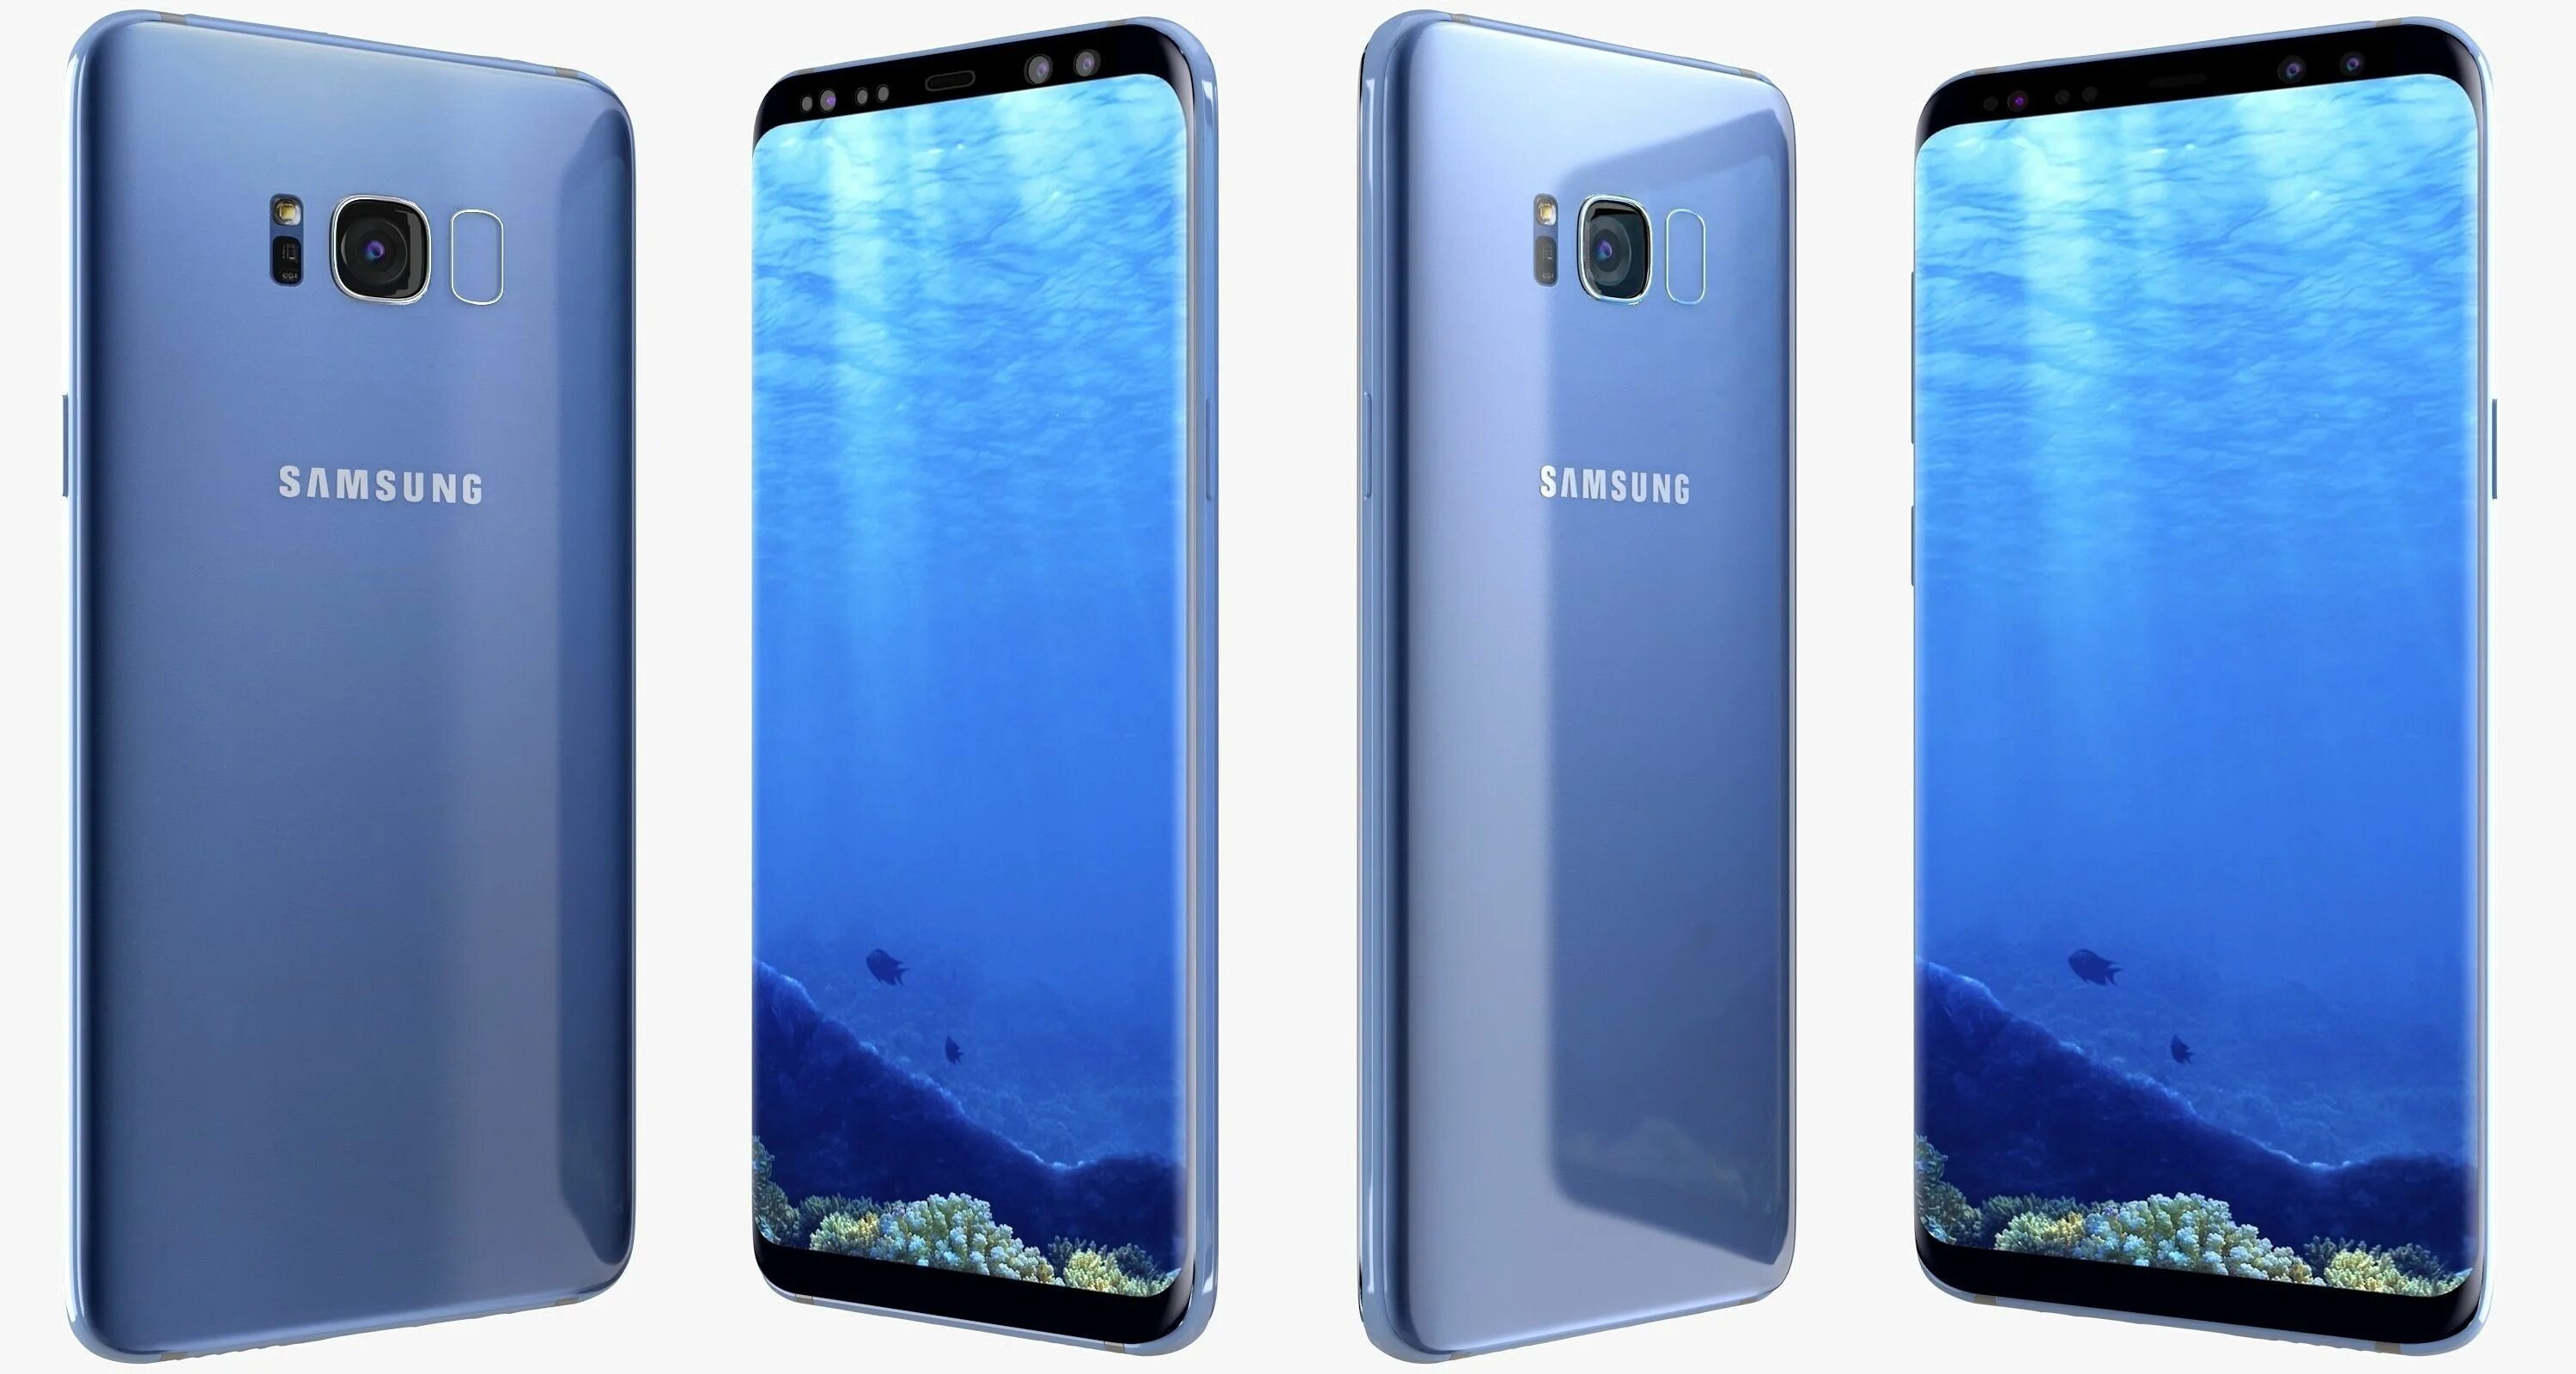 Samsung s8 Blue. Samsung Galaxy s8 Blue. Samsung Galaxy s8 Coral. Samsung Galaxy s8 синий. Coral blue